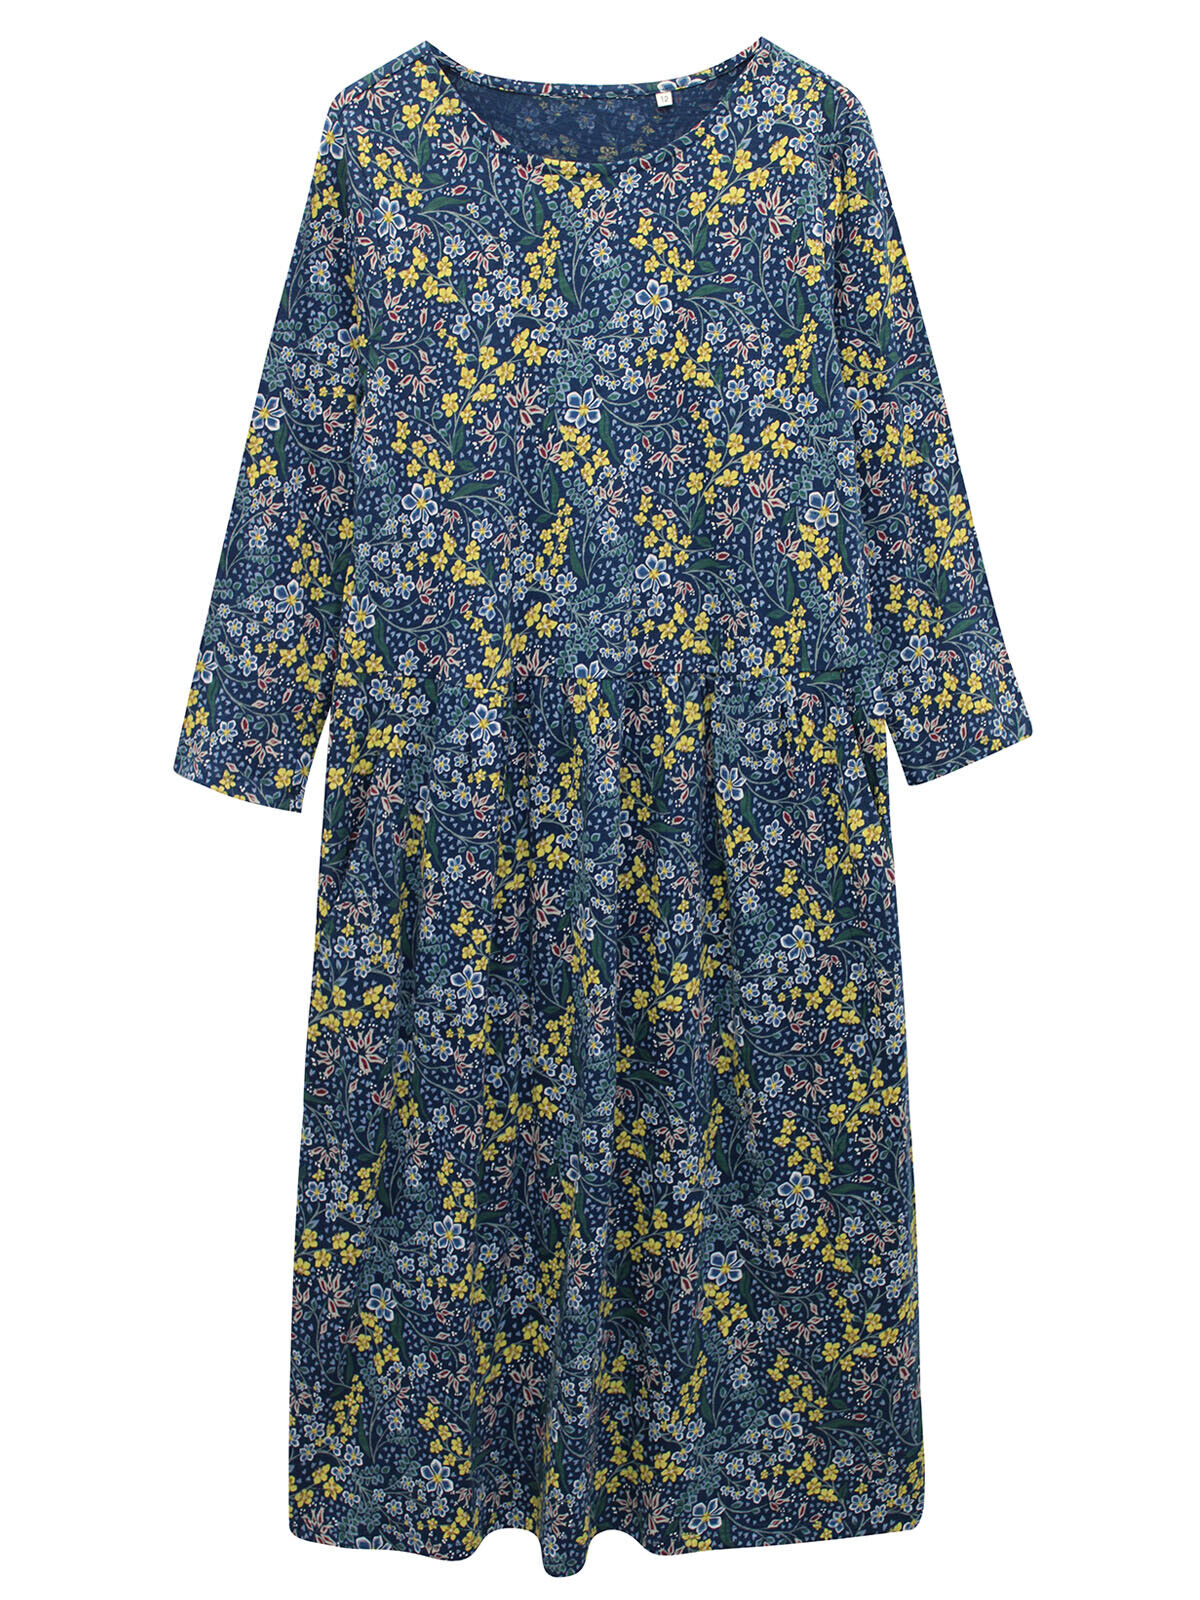 EX Seasalt Blue Garden Medley Raincloud Guelder Rose Dress Sizes 10-20 RRP£59.95